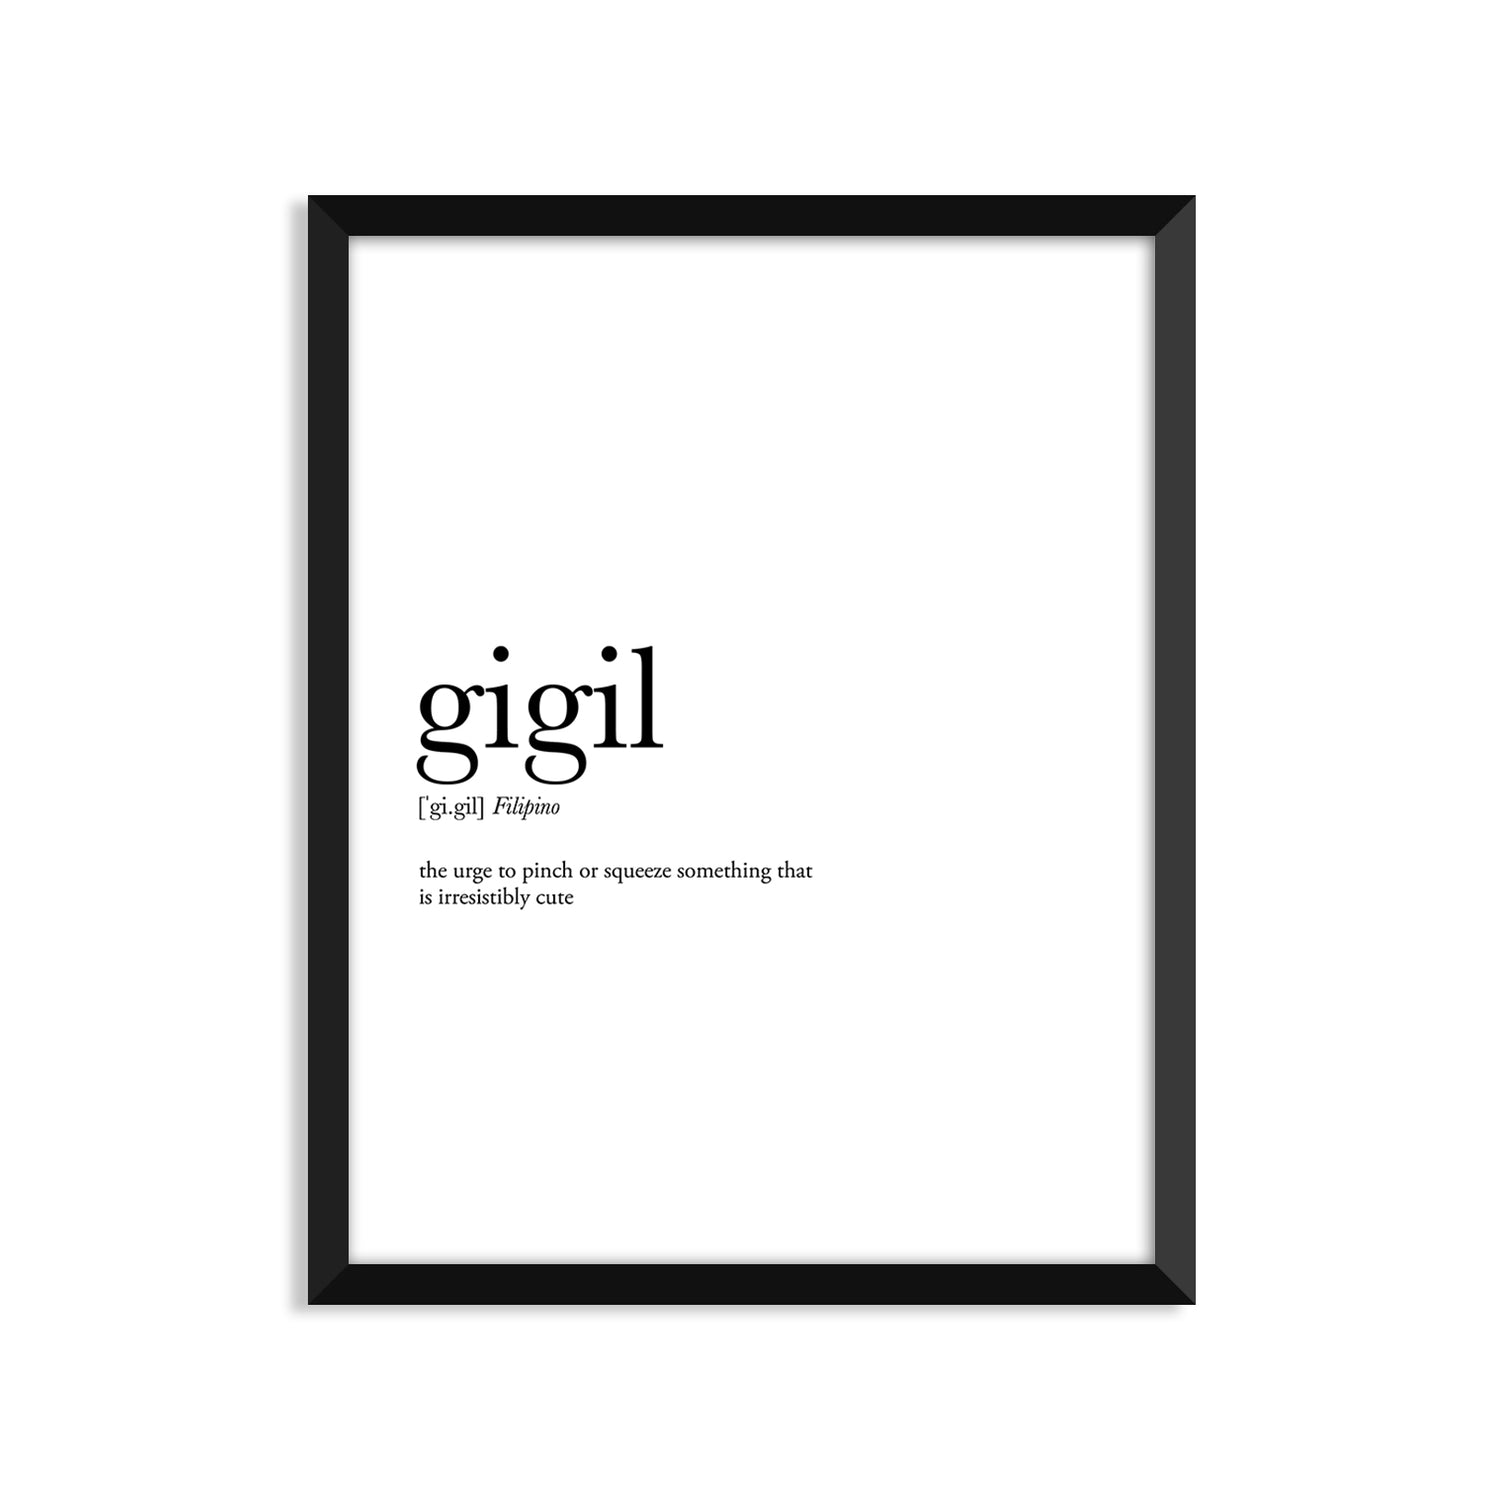 Gigil Definition Everyday Card